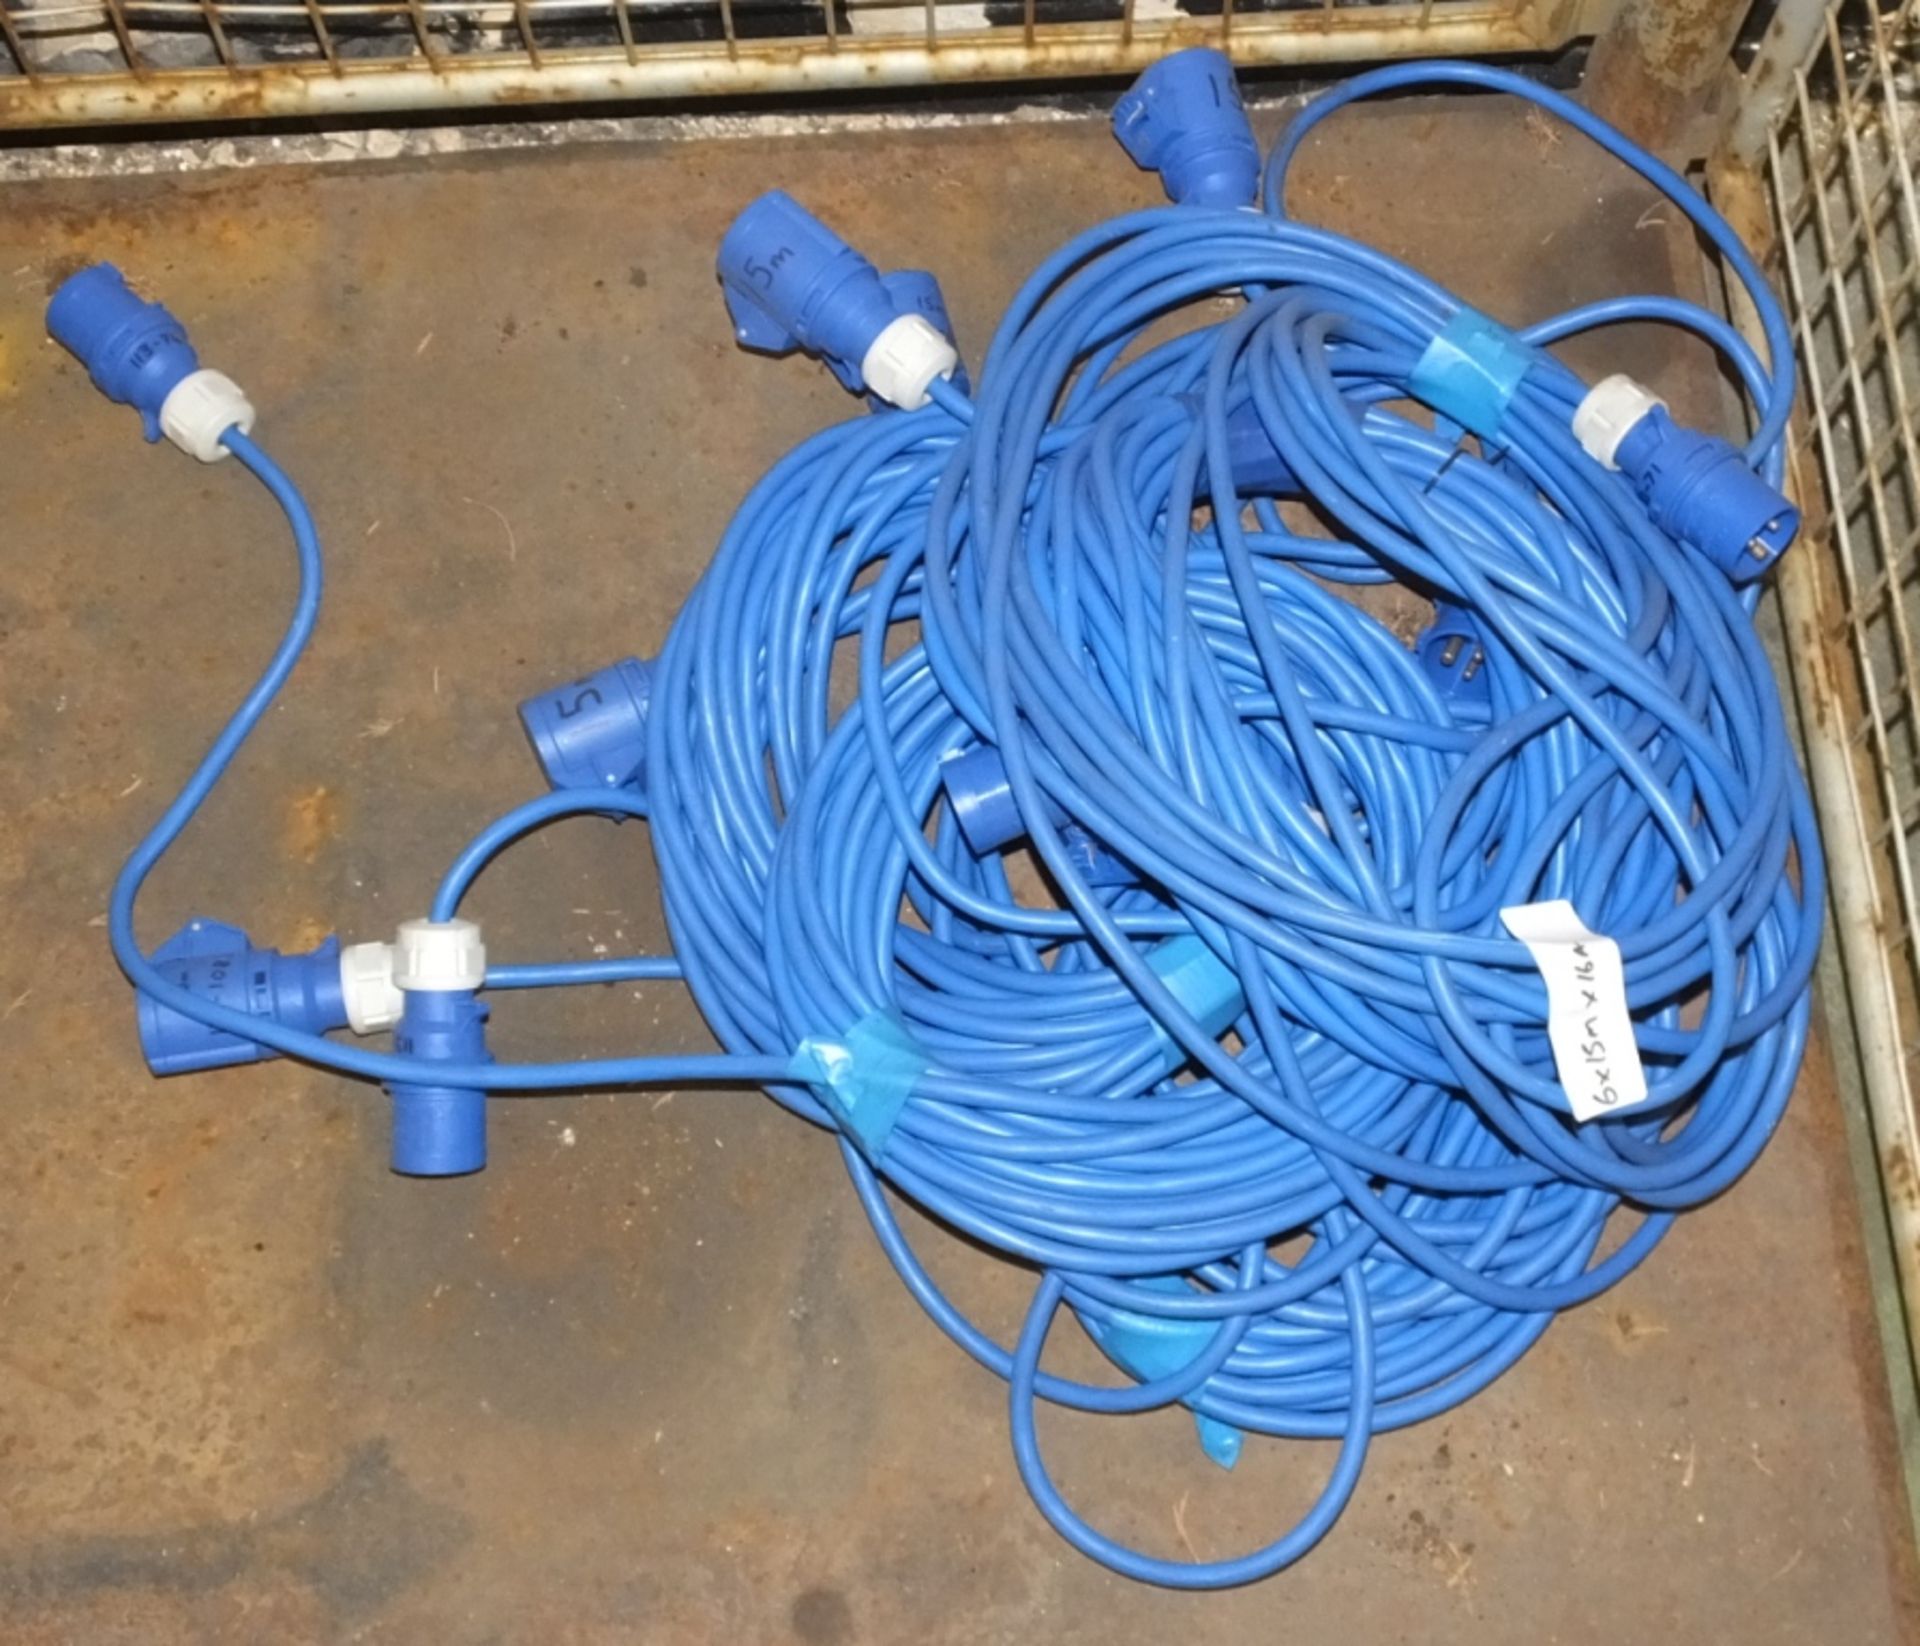 6x Cable Assemblies Blue - 15M x 16A